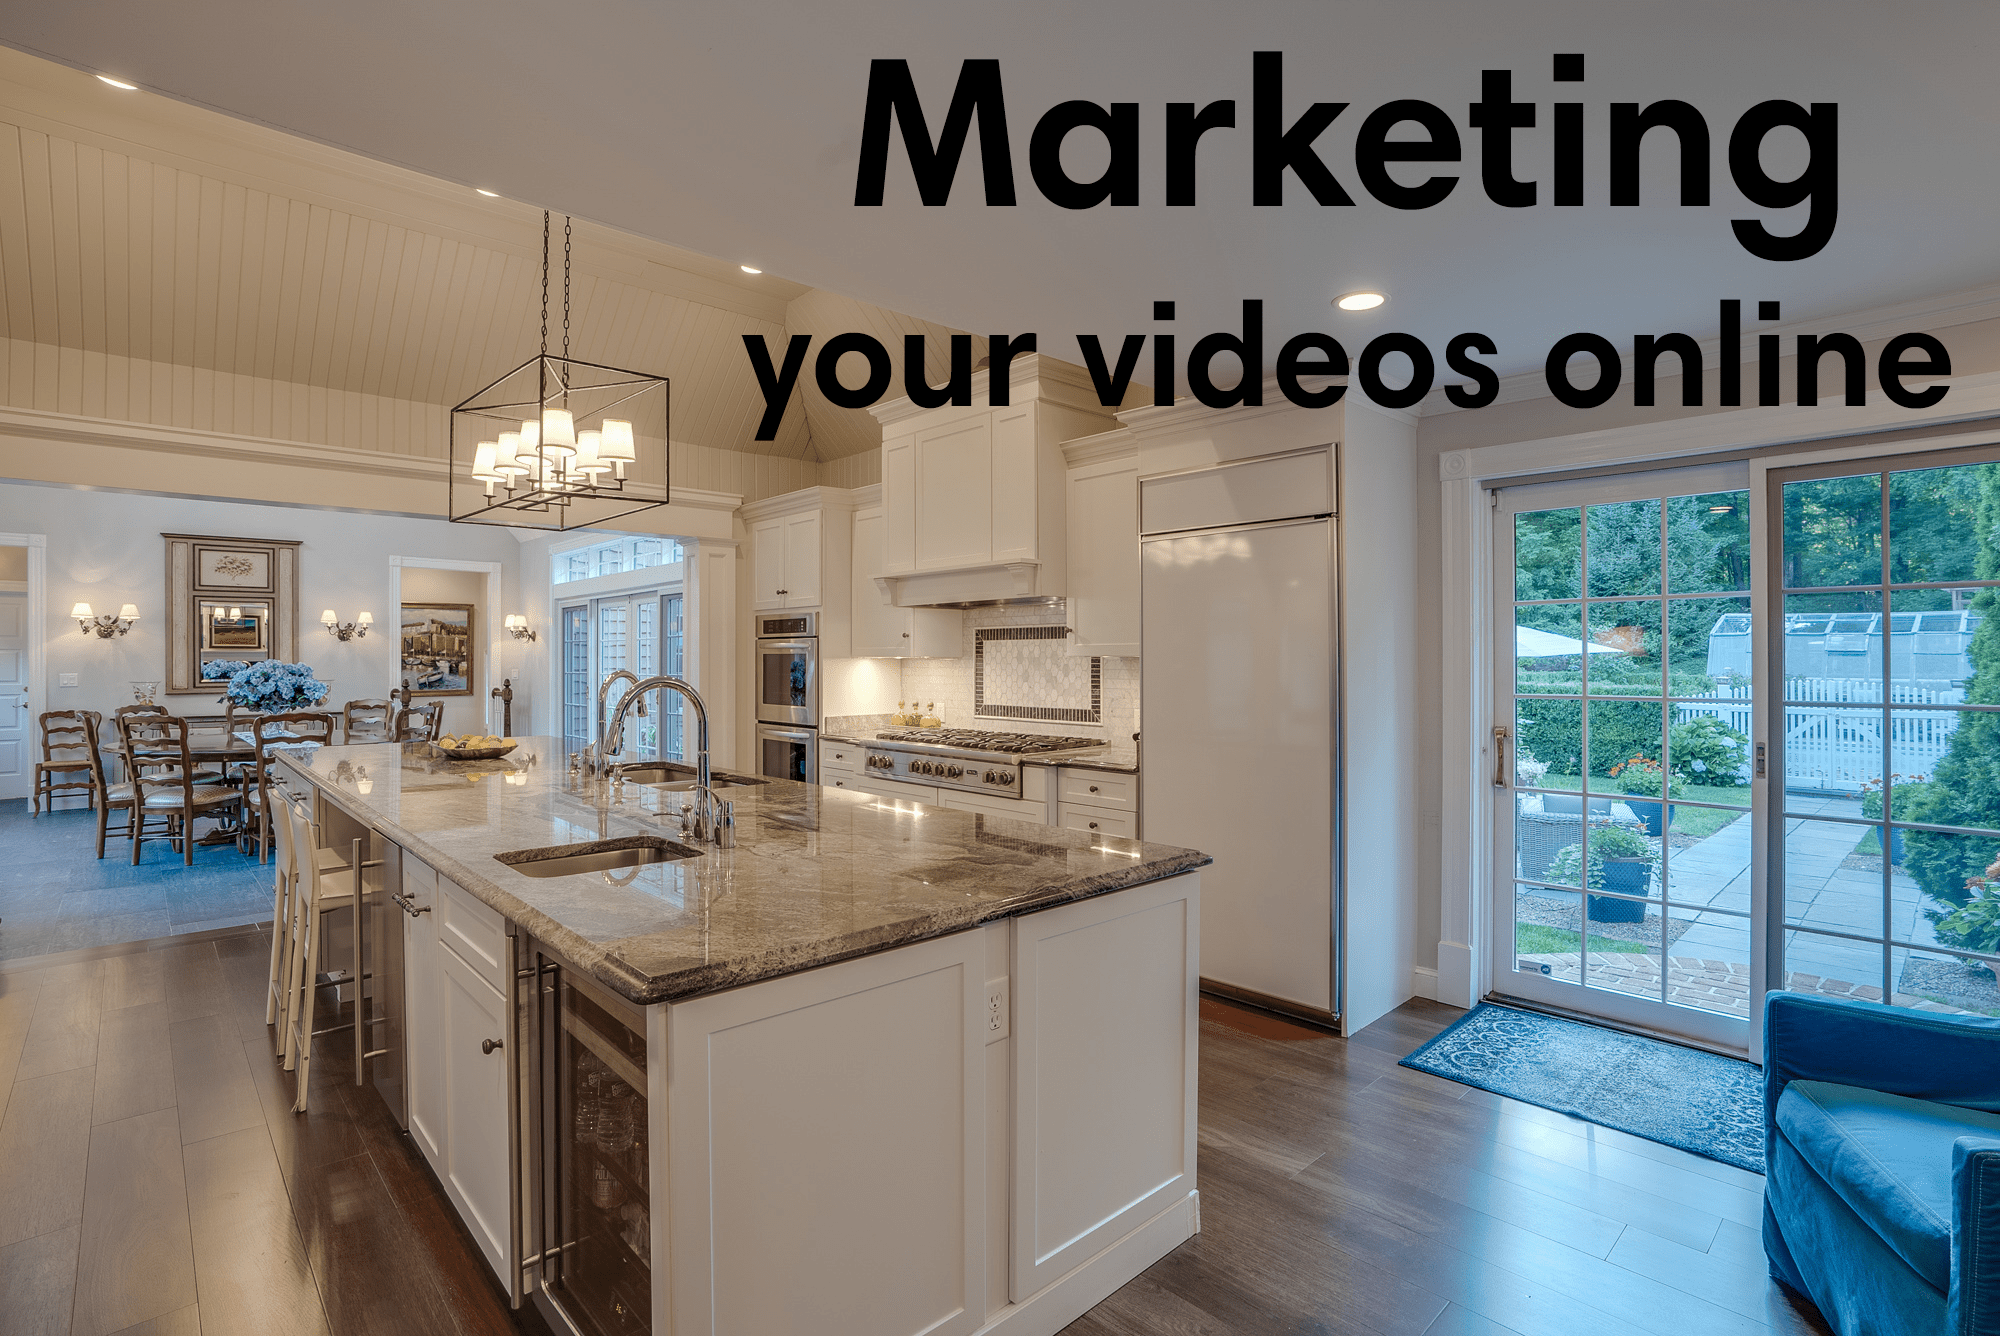 Marketing videos online